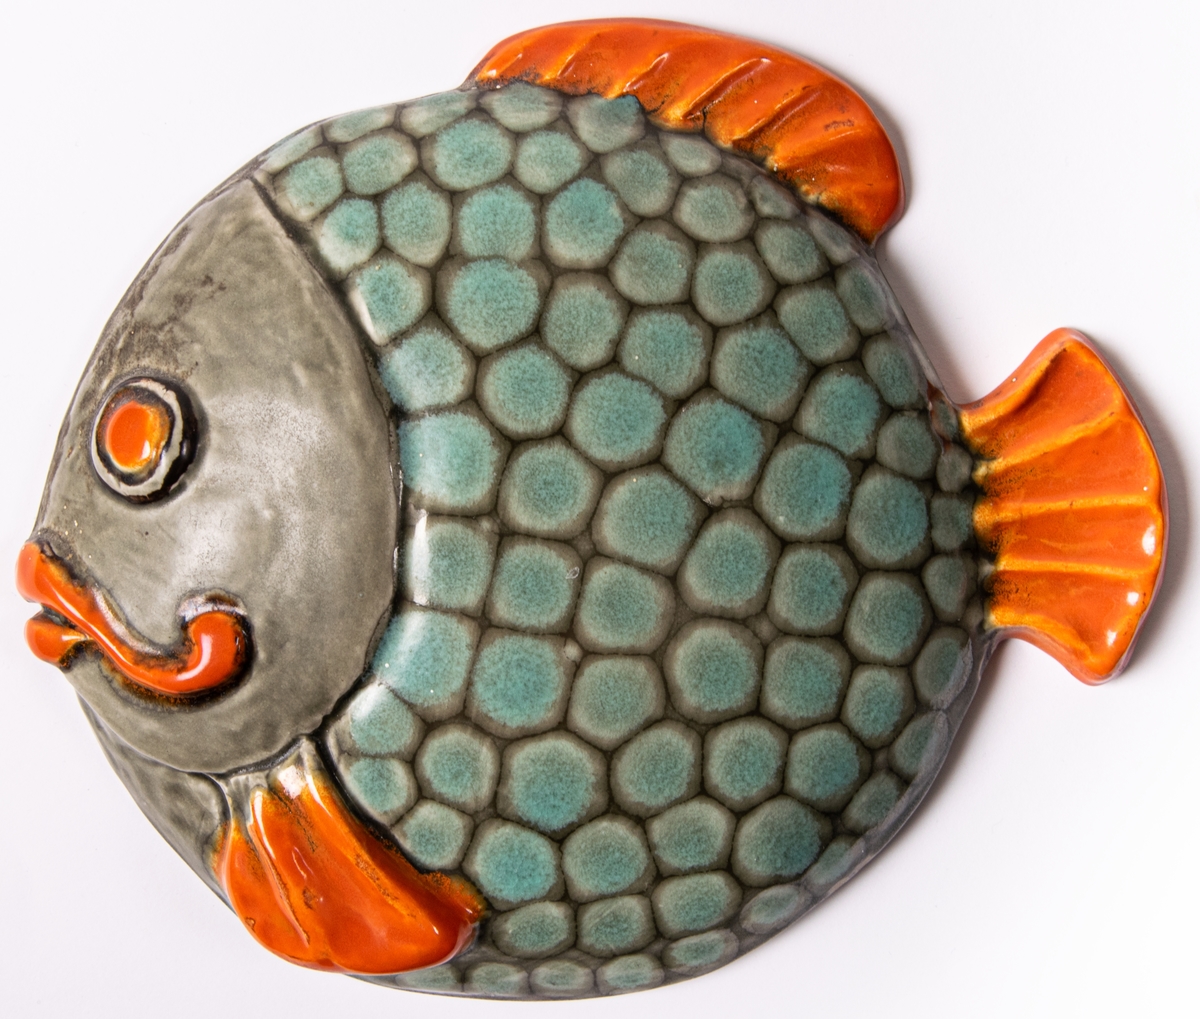 Väggfigurin i lergods i form av en fisk. Modell H.12 (angivet på baksidan) eller HO12 (enligt förteckning), glasyr 508 i orange, blekgrön och ljusbrun. Glasyren 508 användes enligt Birgitta Lundblads bok 1934-48.